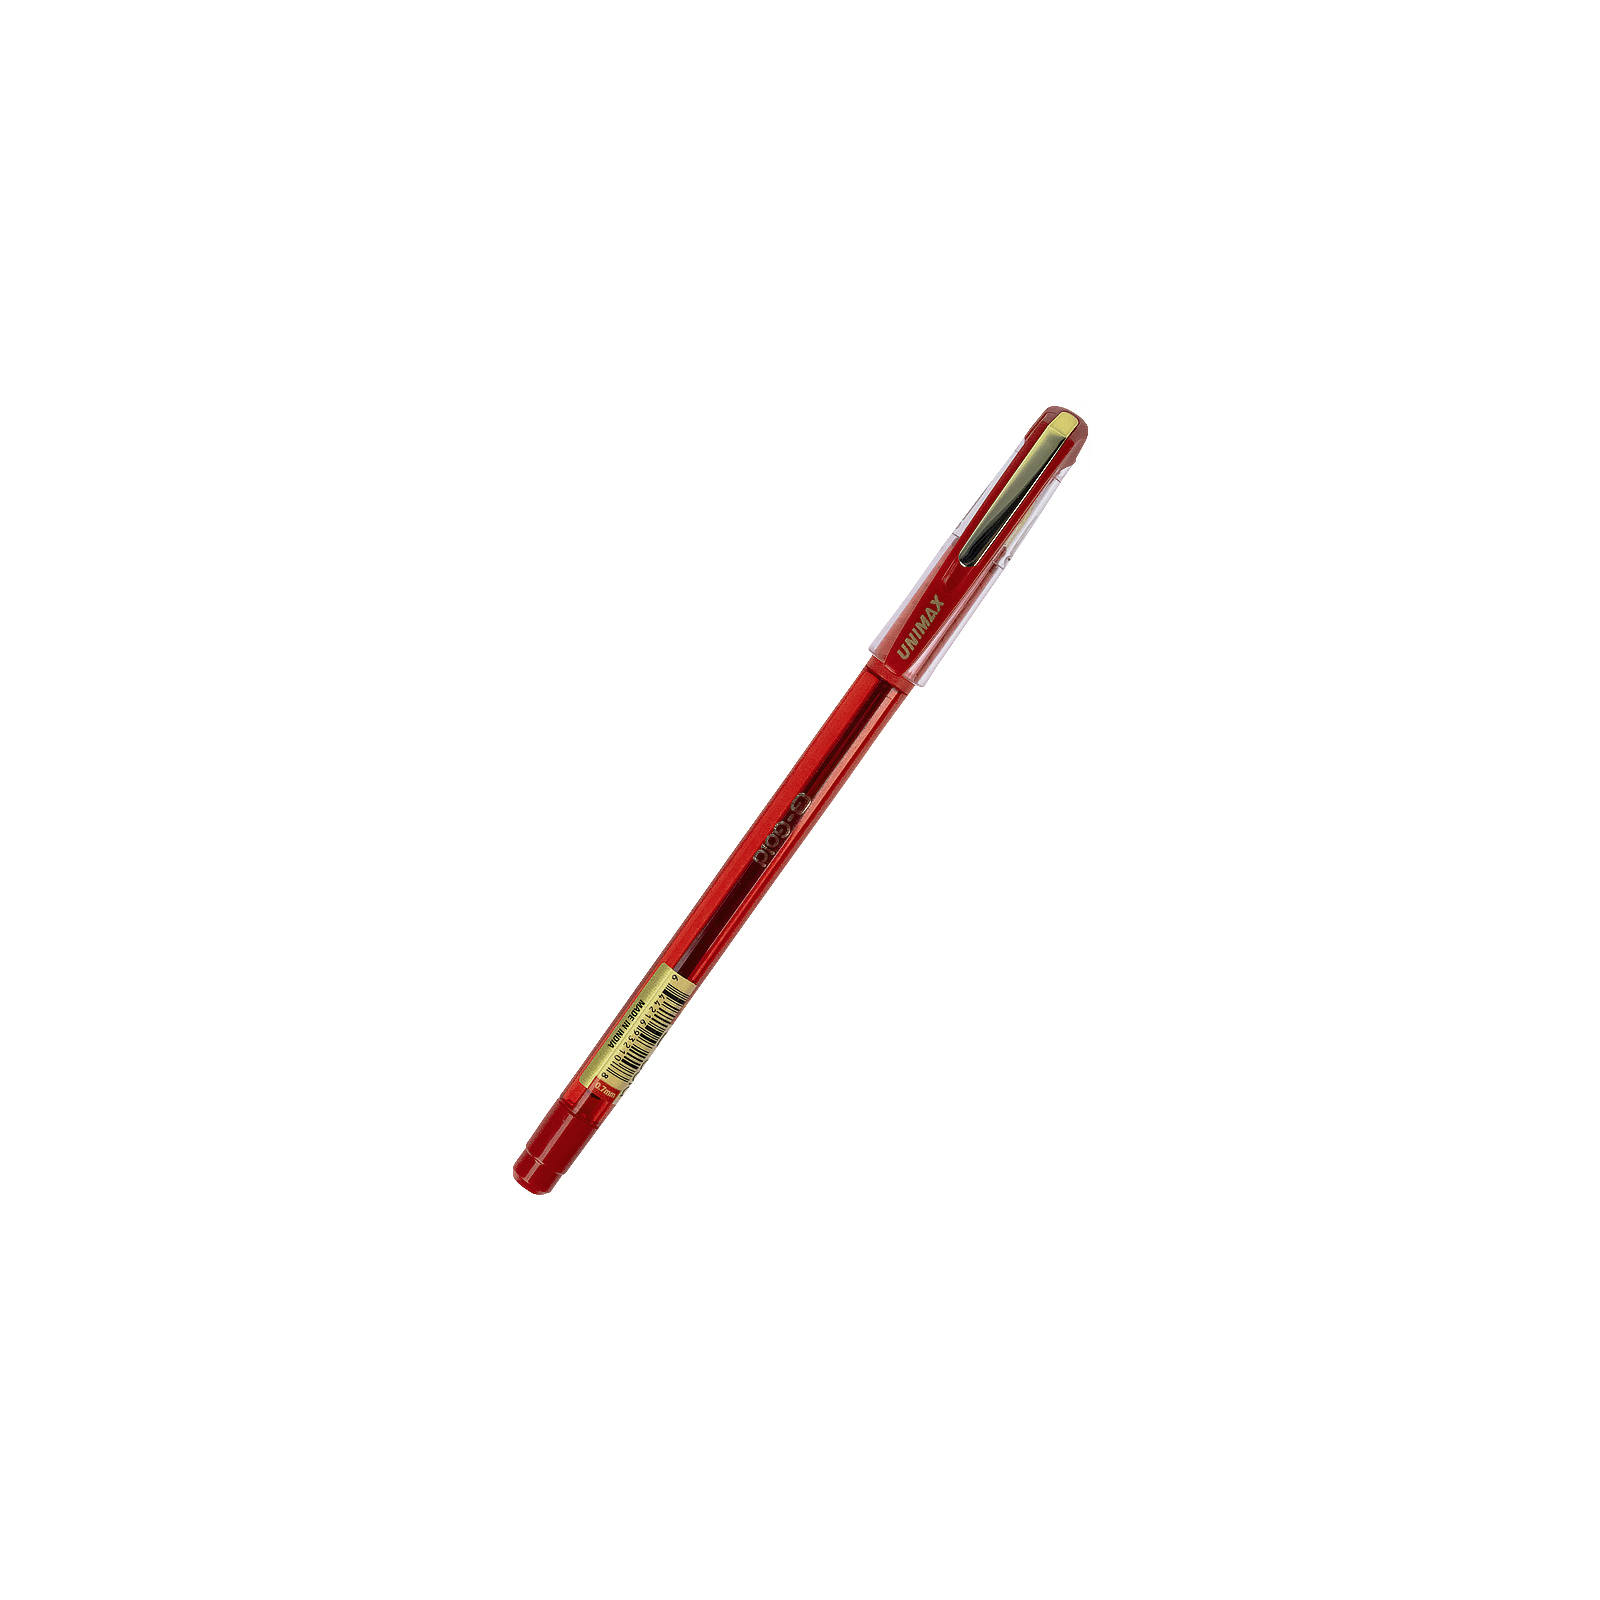 Ручка шариковая Unimax G-Gold, синяя (UX-139-02) изображение 2